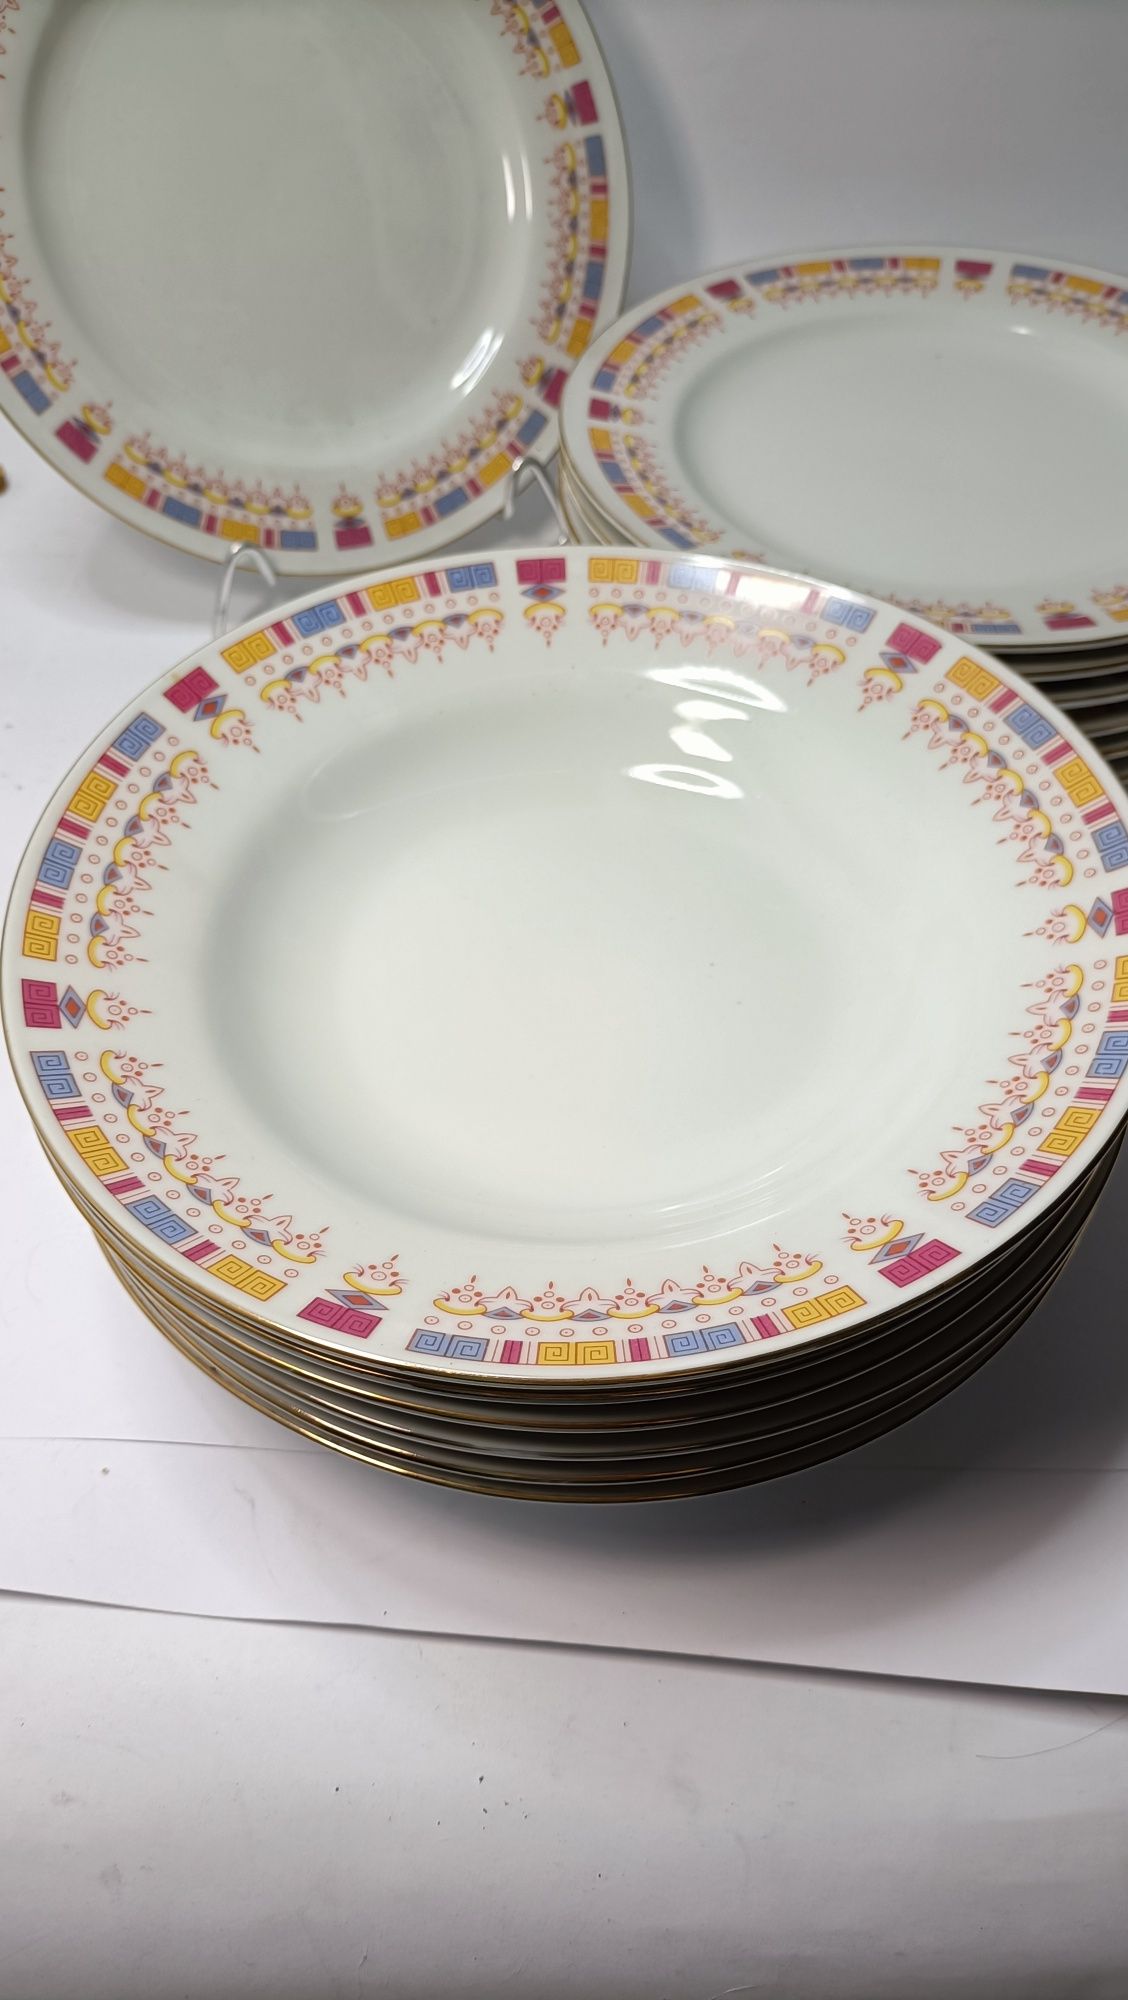 Piękny komplet obiadowy talerze na 7 osób chińska porcelana PRL